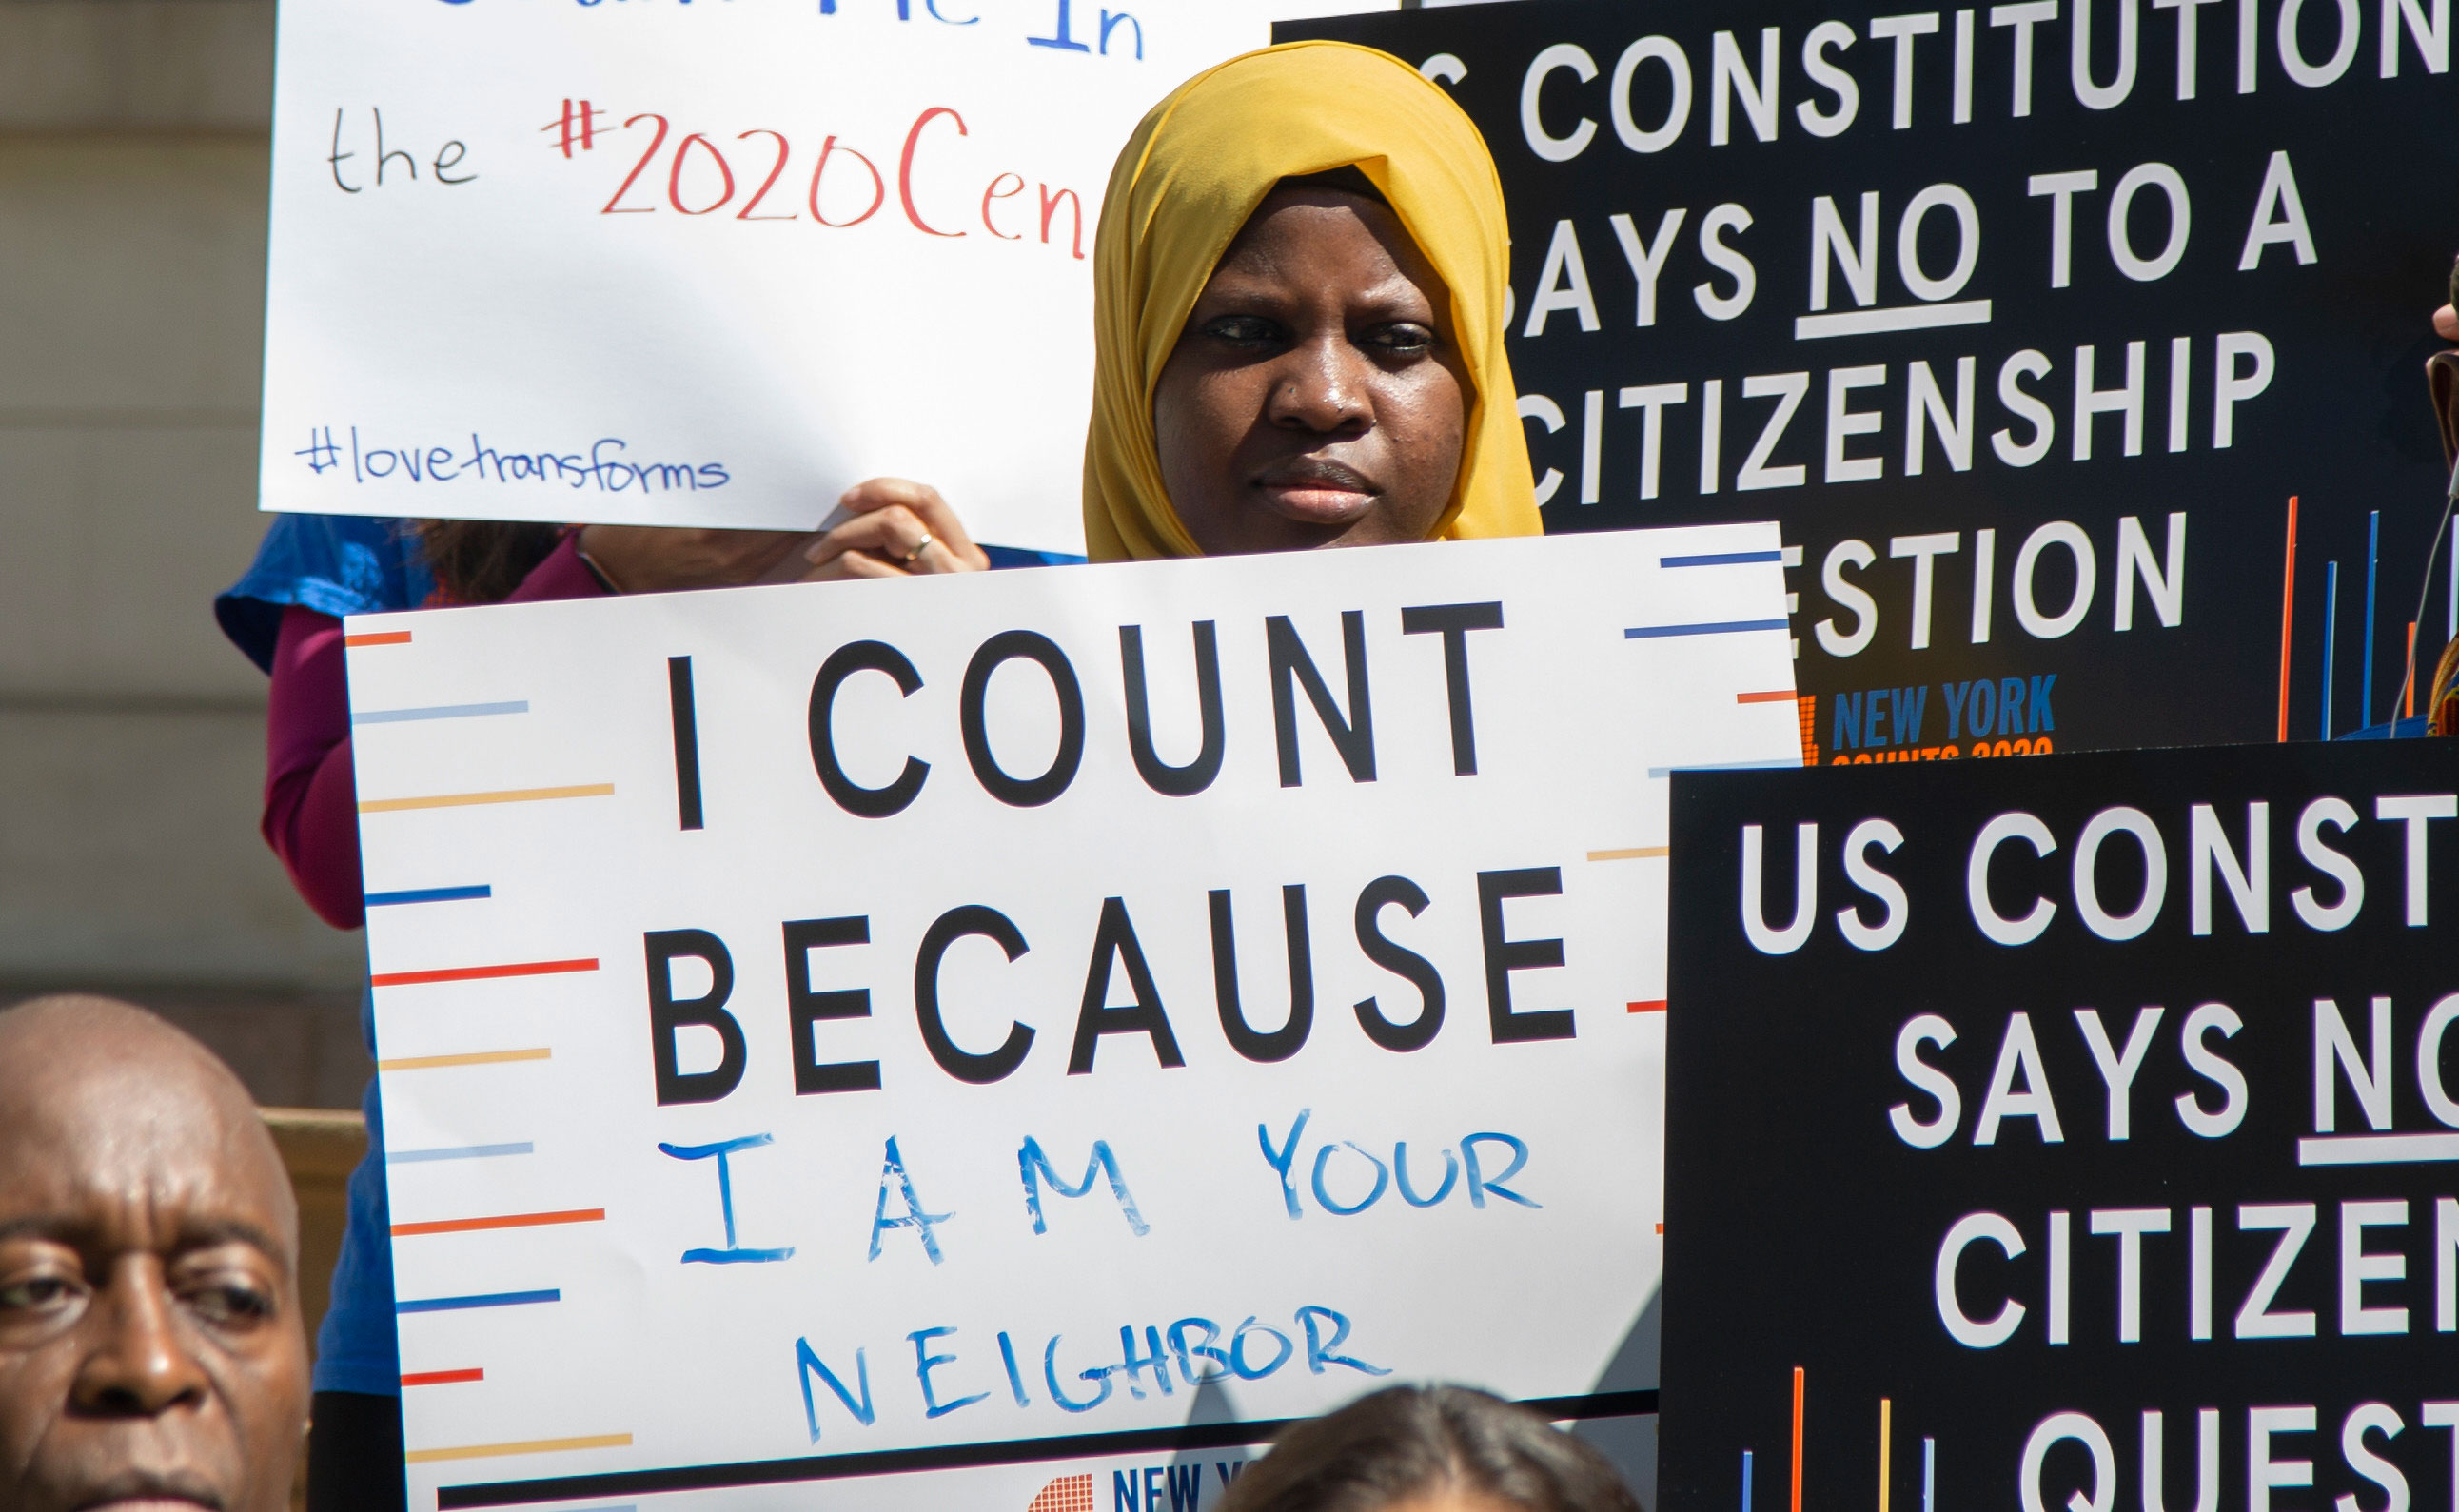 画像は、ニューヨーク市議会の記者会見で「私はあなたの隣人だからカウントする」というサインを持っている若者を示しています。